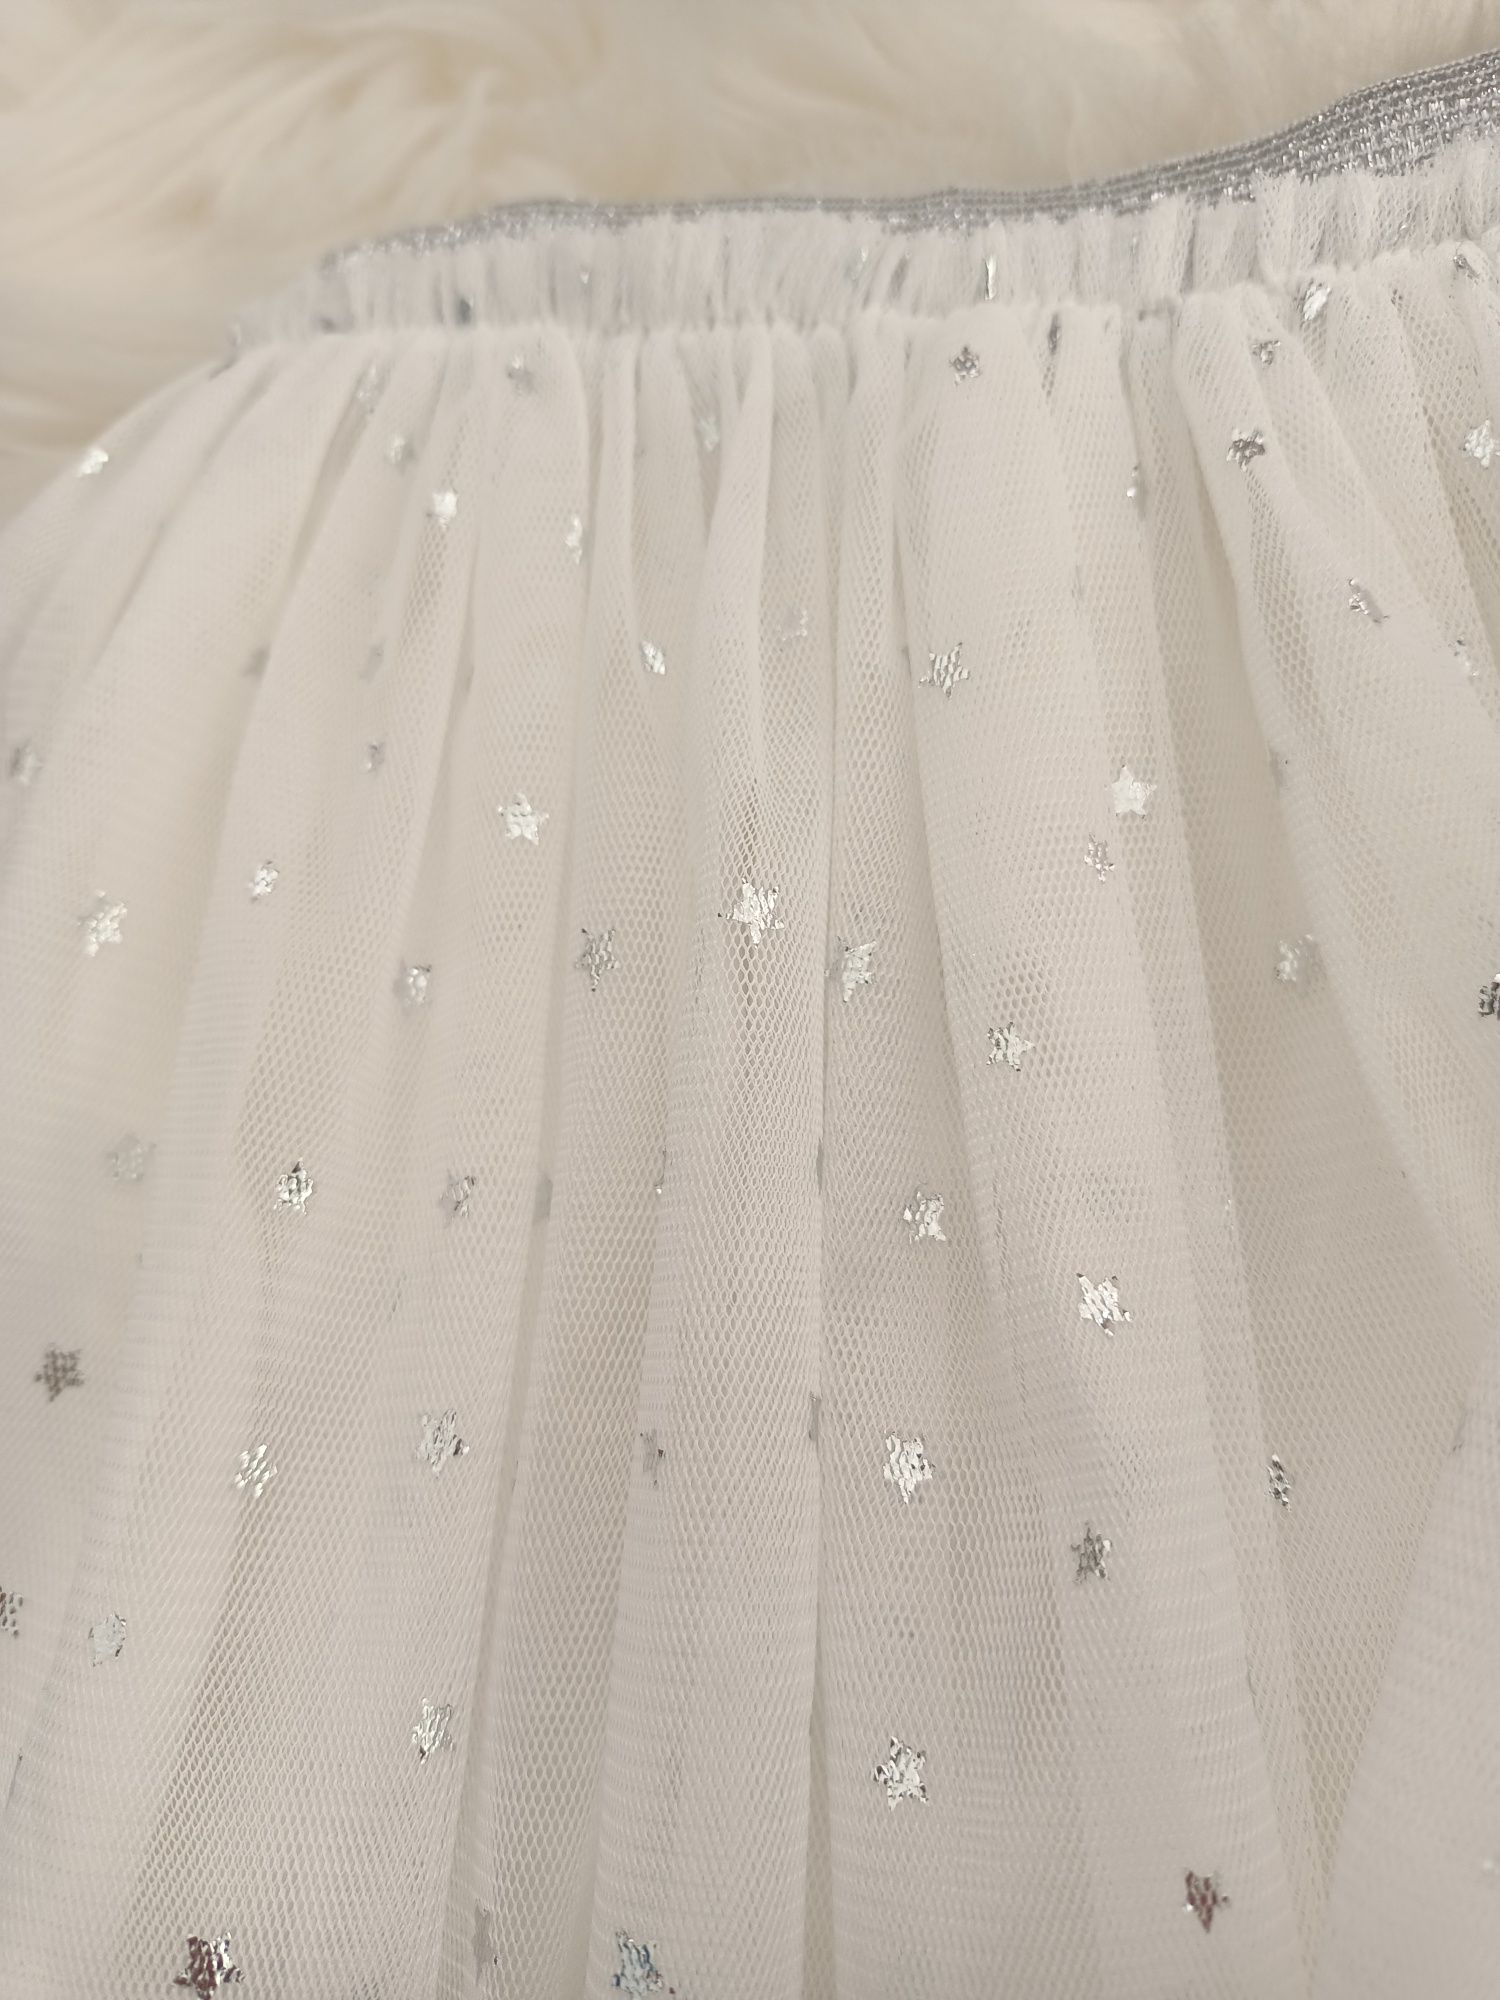 Tiulowa spódnica dla dziewczynki rozmiar 74 biała srebrne gwiazdki